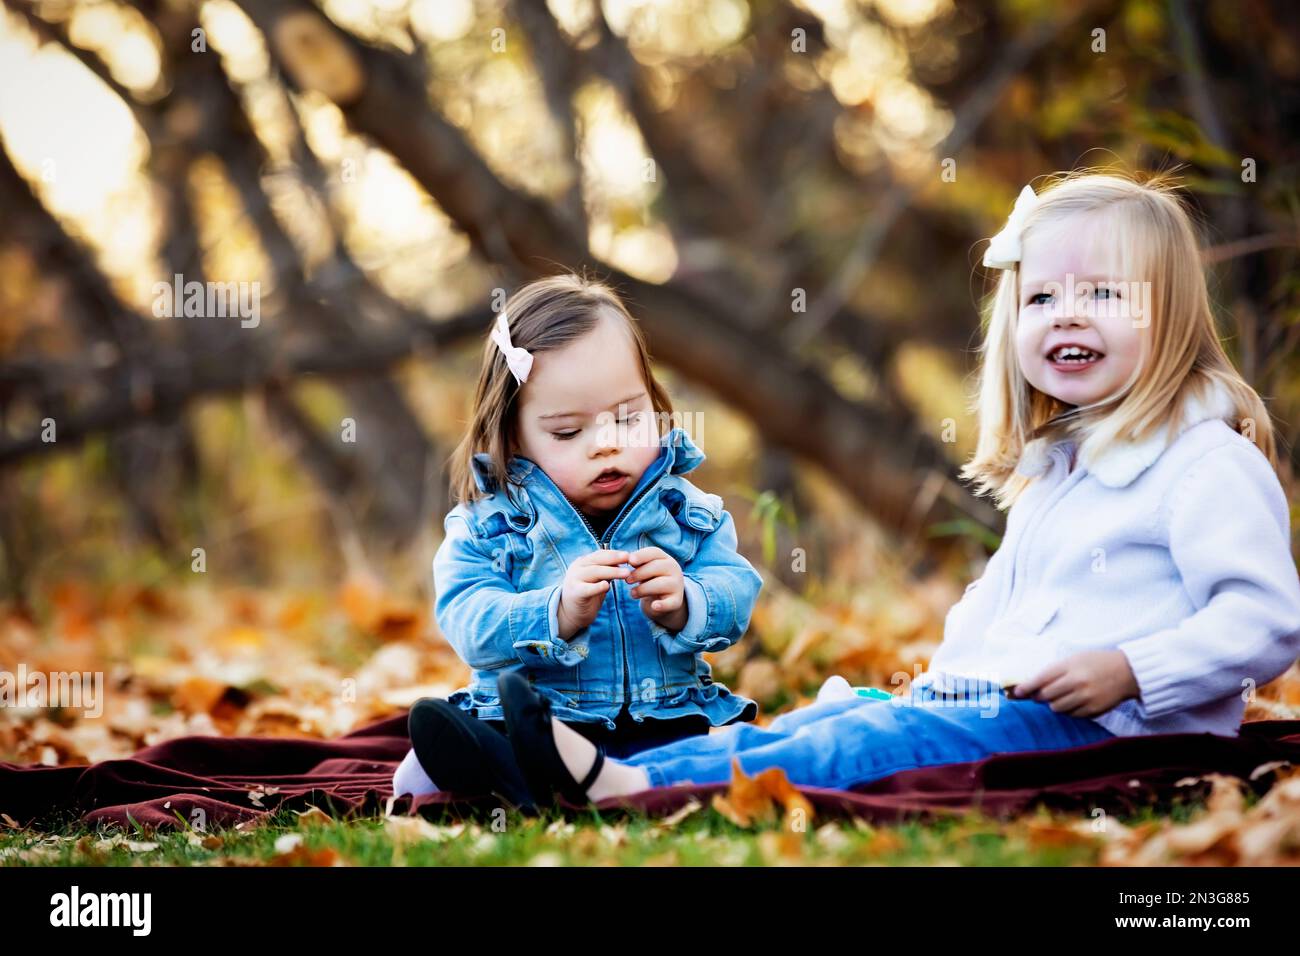 Deux jeunes sœurs, une avec le syndrome de Down, jouant ensemble dans un parc de la ville pendant la saison d'automne; St. Albert, Alberta, Canada Banque D'Images